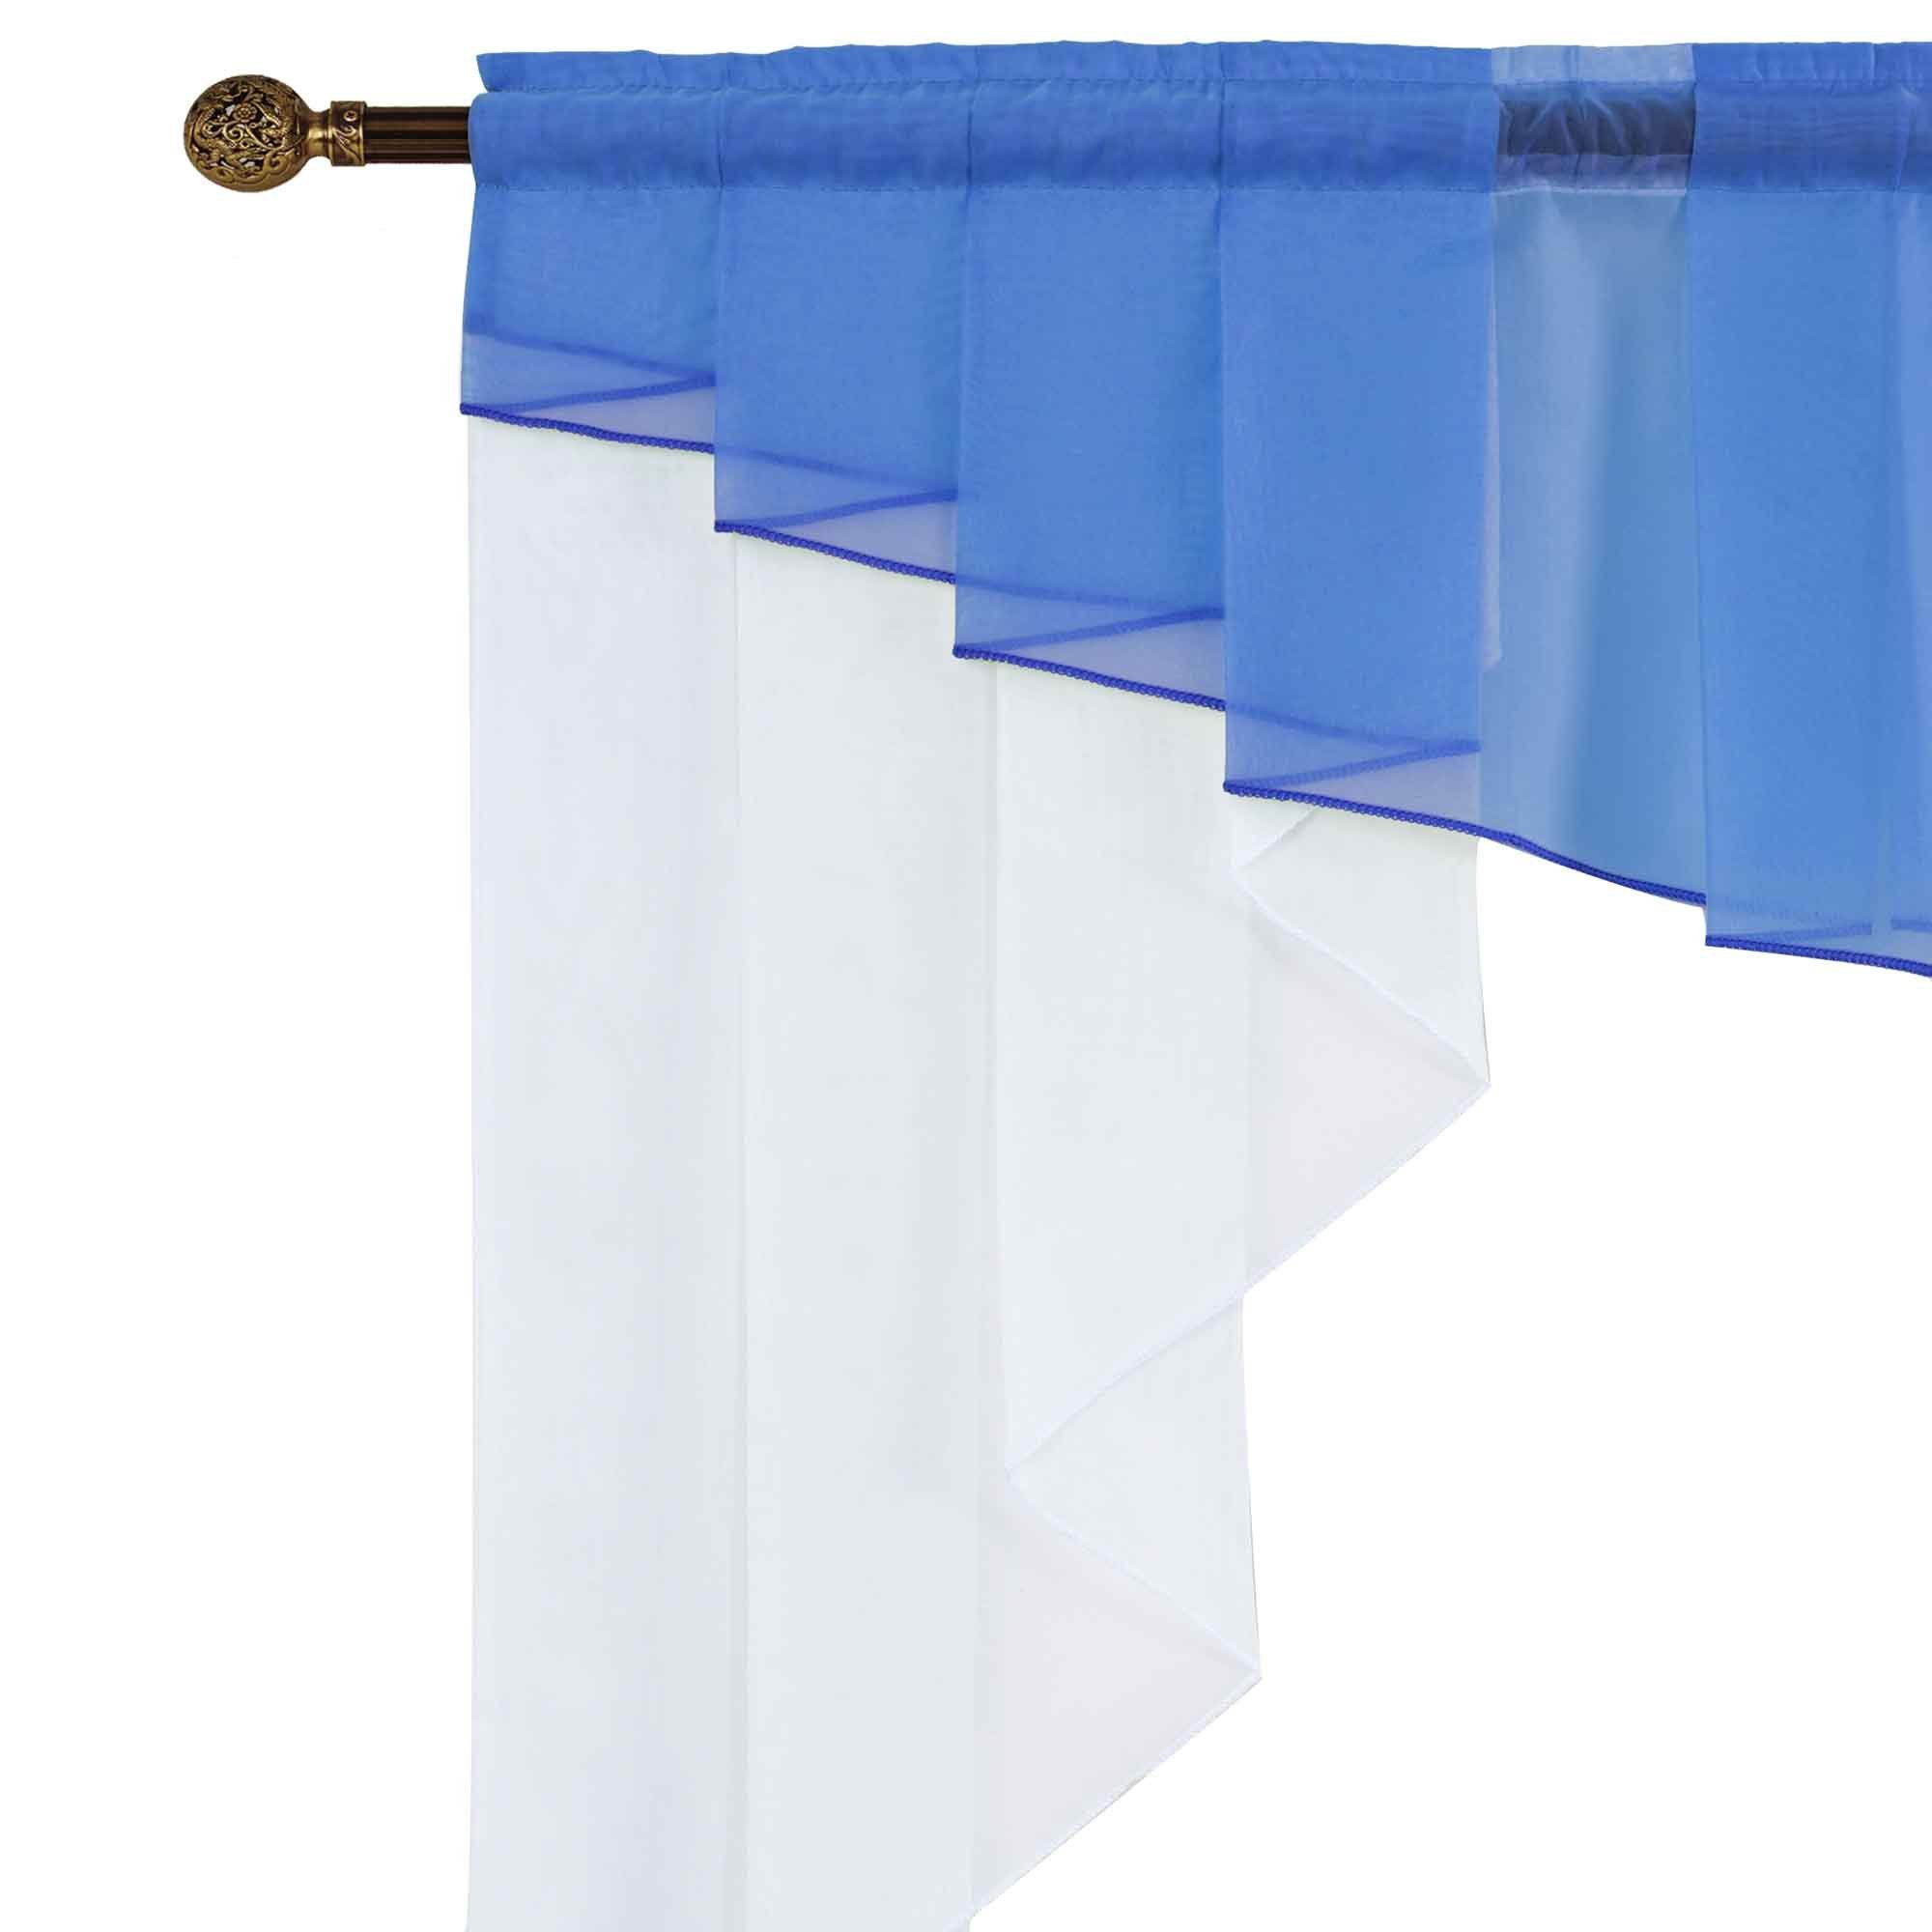 Stangendurchzug, Voile, Gardinenbox, Scheibengardine, Blau transparent, Universalband Kurzgardine M-Bogen